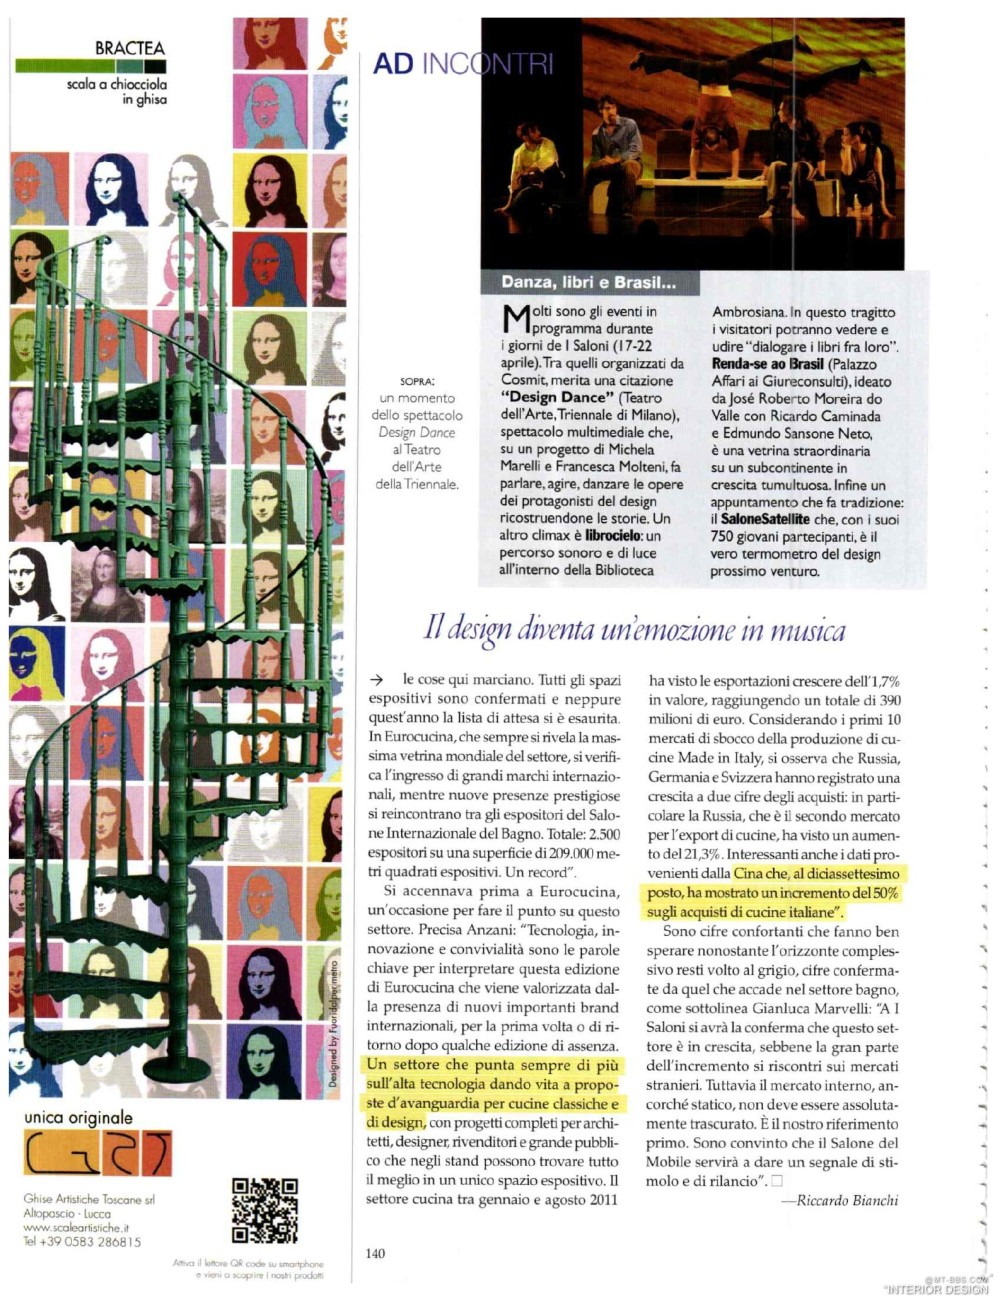 意大利AD 杂志 2012年全年JPG高清版本 全免（上传完毕）_0140.jpg